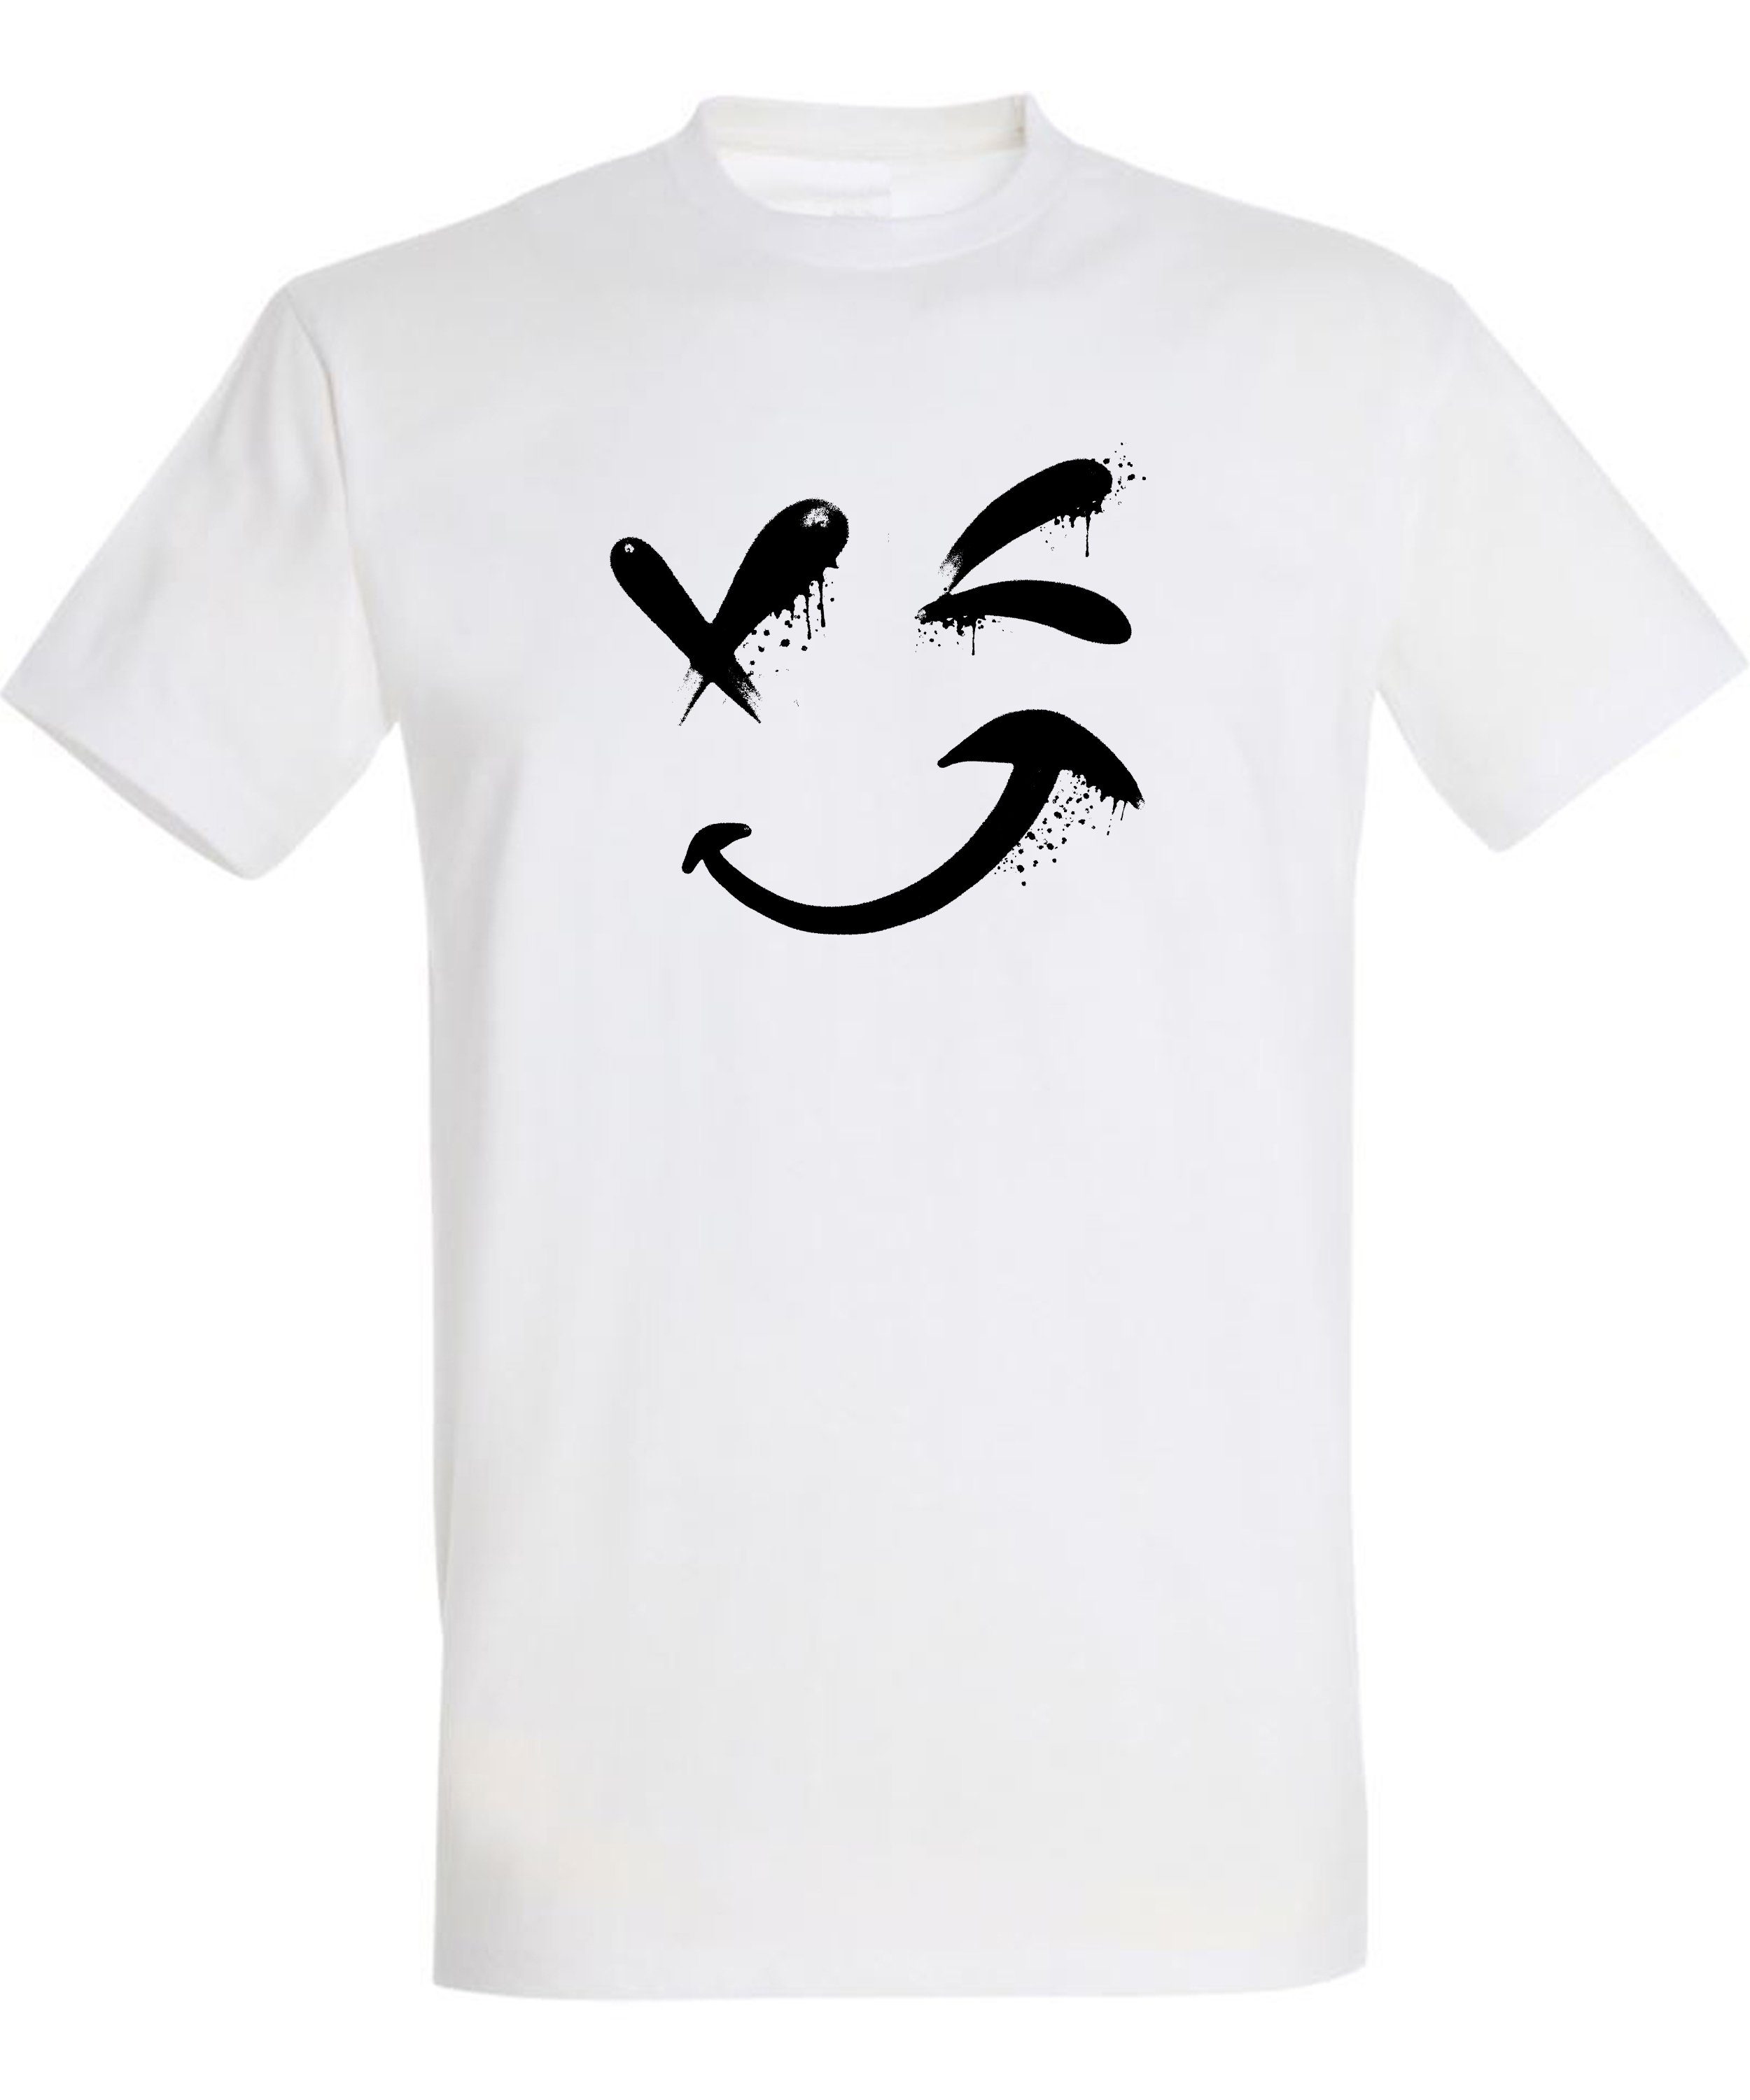 mit Herren MyDesign24 Smiley Print Regular Baumwollshirt Shirt Fit, Zwinkernder weiss Smiley T-Shirt Aufdruck - i294